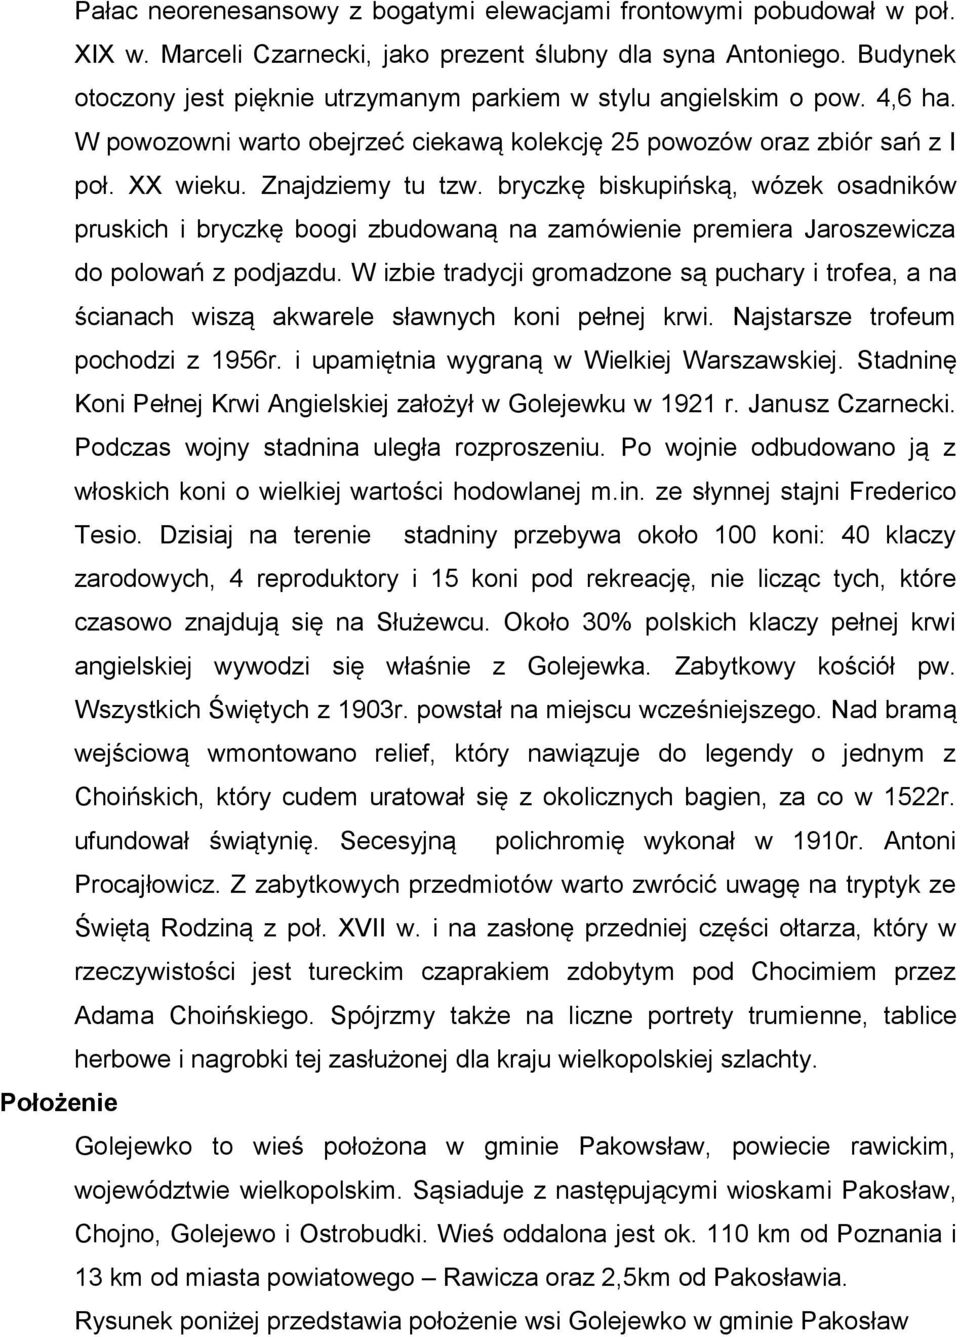 bryczkę biskupińską, wózek osadników pruskich i bryczkę boogi zbudowaną na zamówienie premiera Jaroszewicza do polowań z podjazdu.